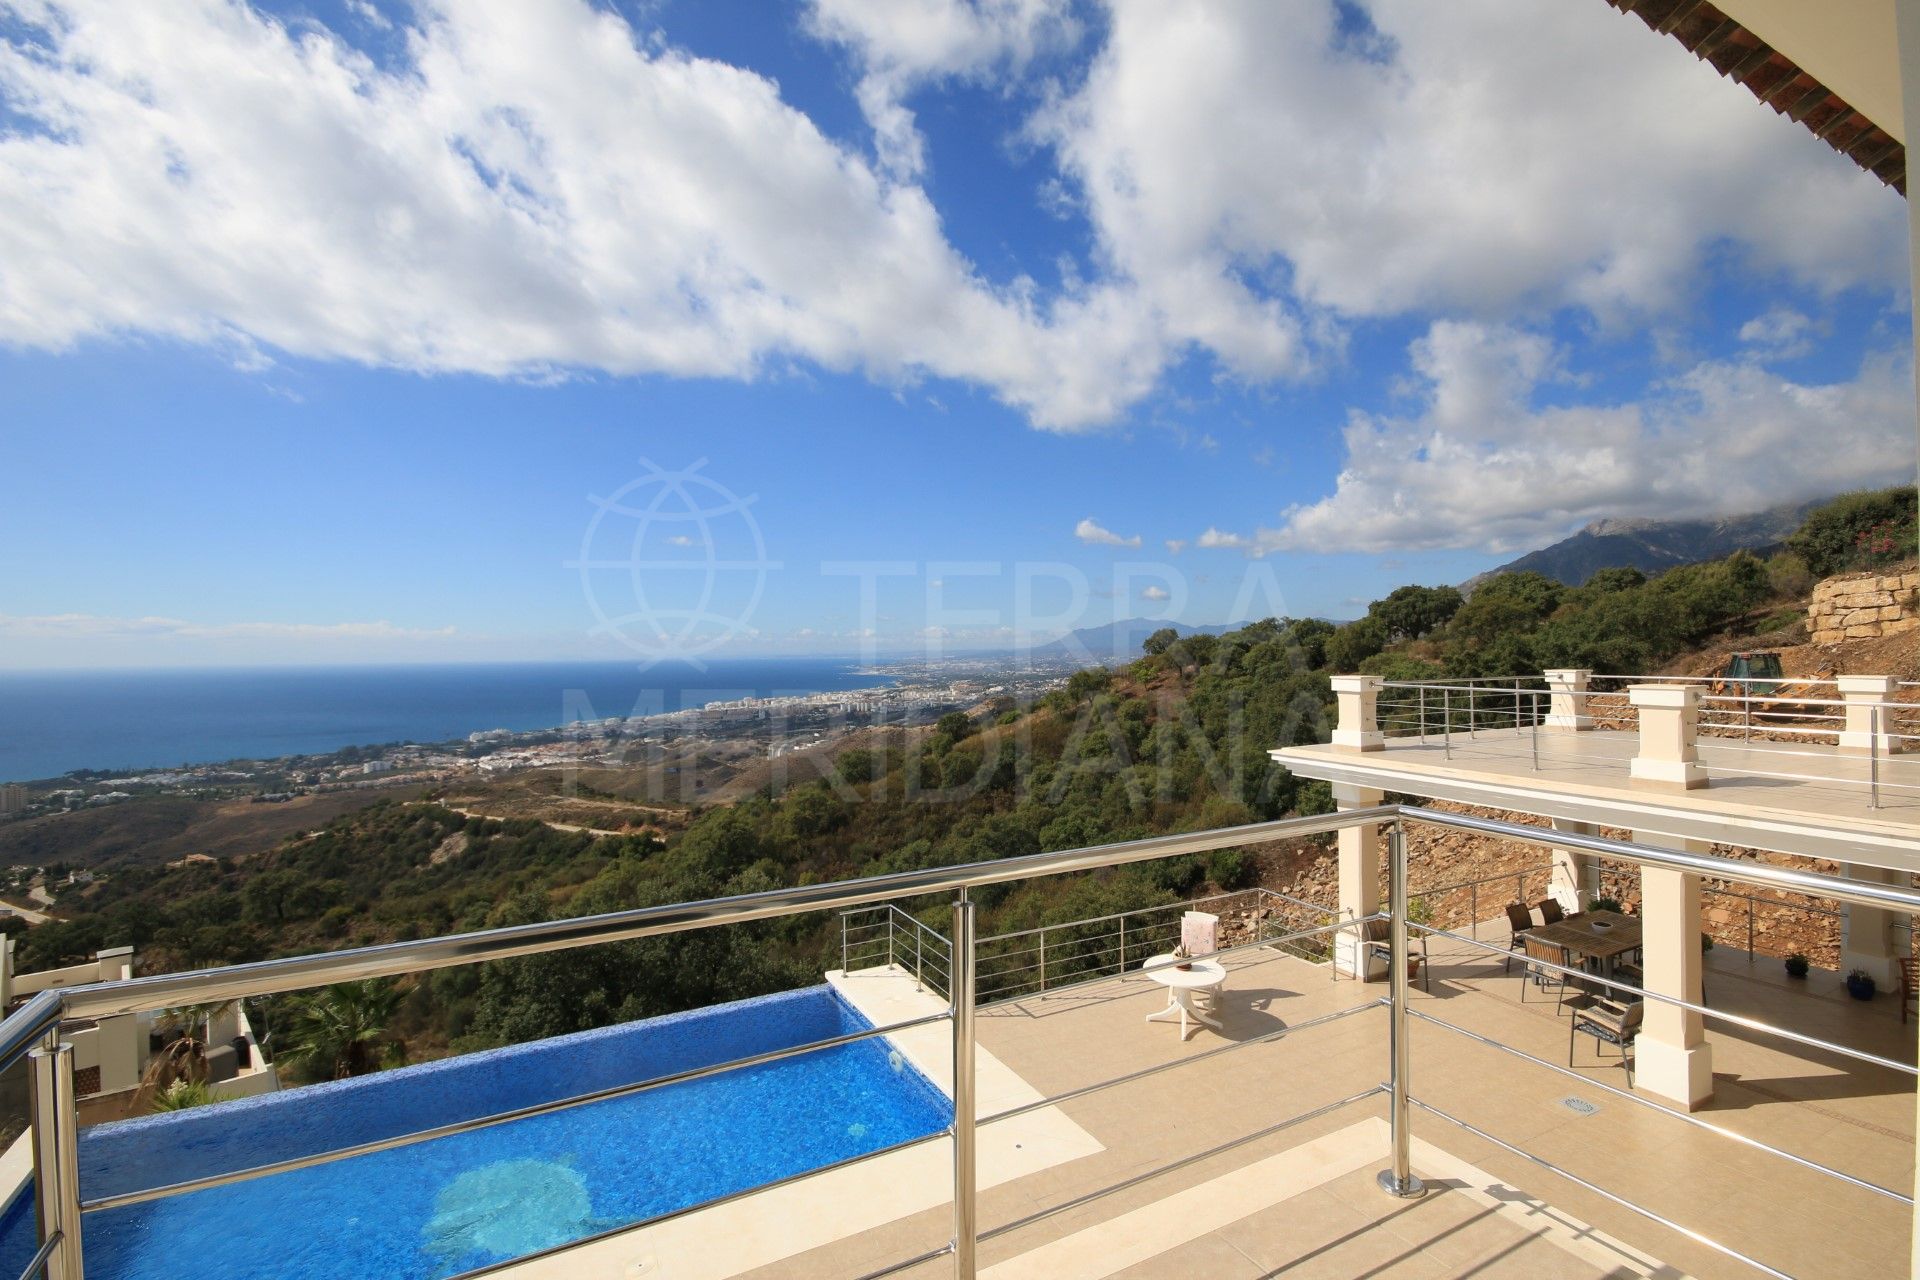 Large villa with stunning views of the Mediterranean, Los Altos de Los Monteros in Marbella